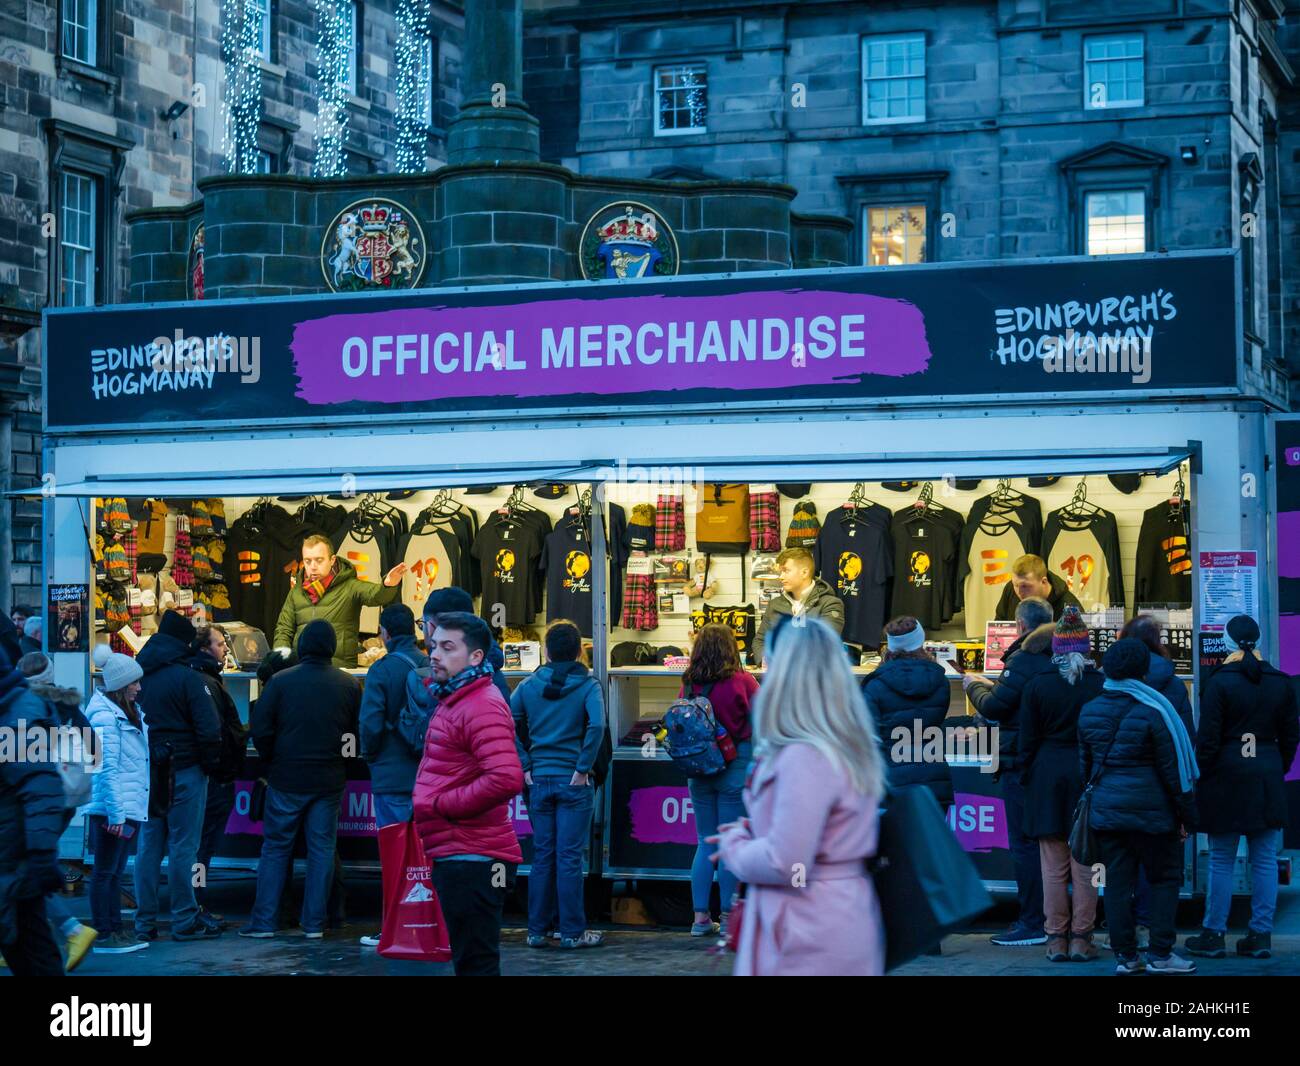 Menschen kaufen waren für Edinburgh Hogmanay auf der Straße abgewürgt Verkauf offizielle waren, Royal Mile, Edinburgh, Schottland, Großbritannien Stockfoto